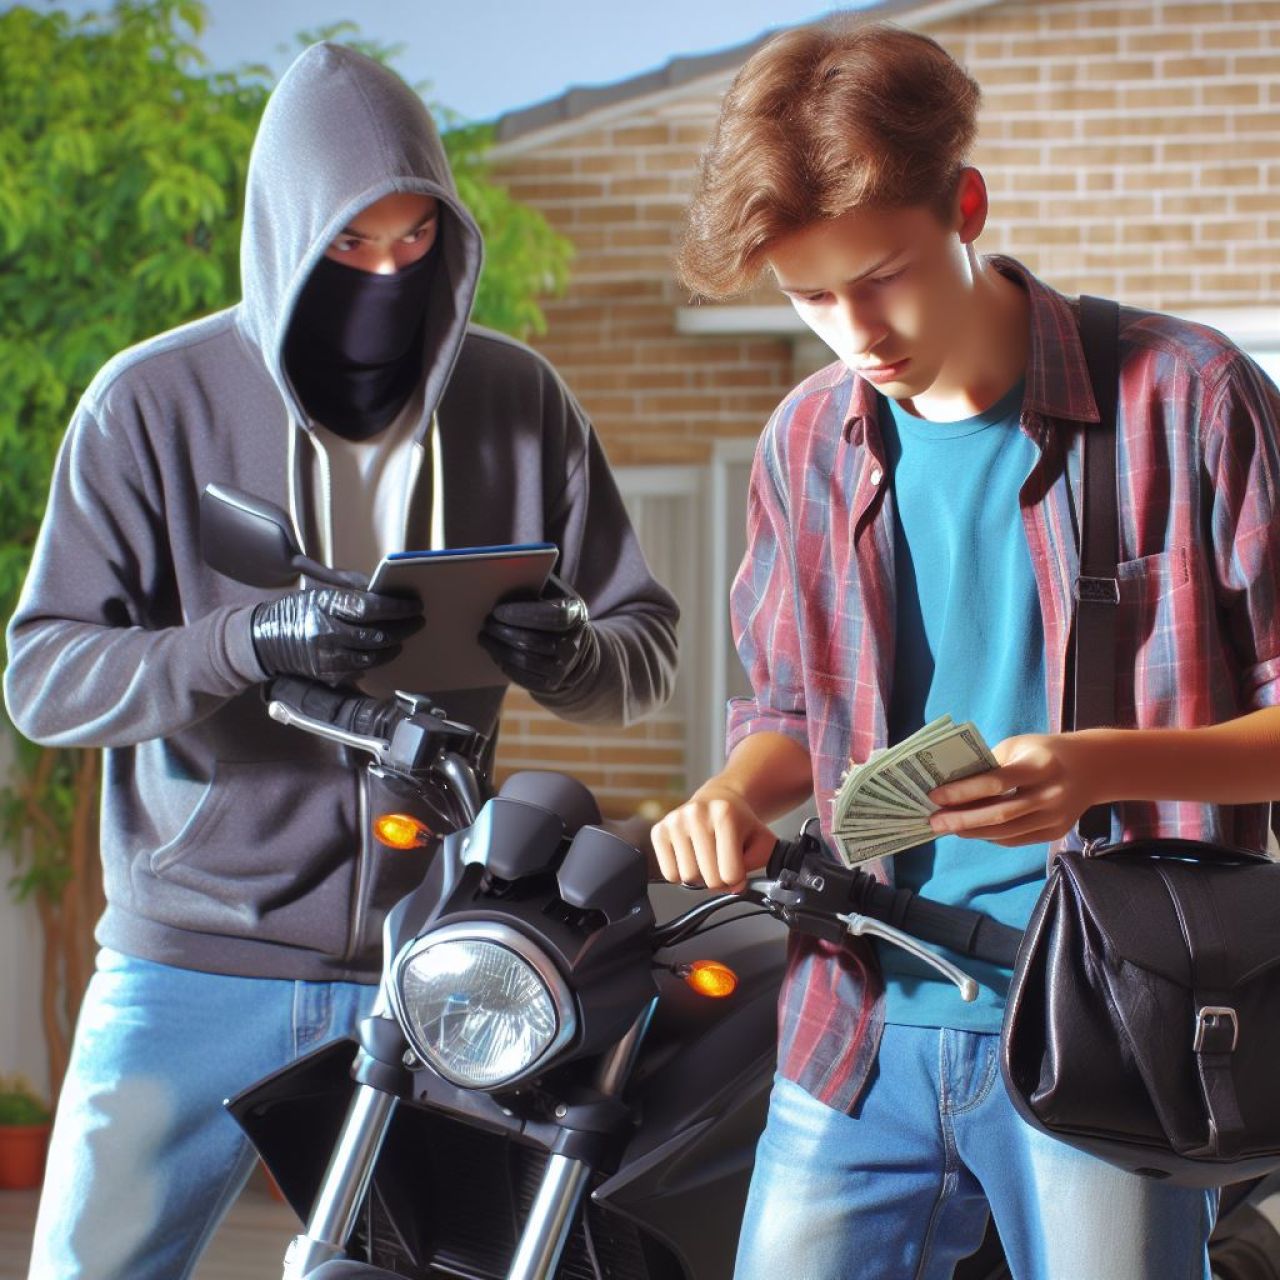 Підліток тривалий час збирав гроші на мотоцикл, але натрапив на шахраїв